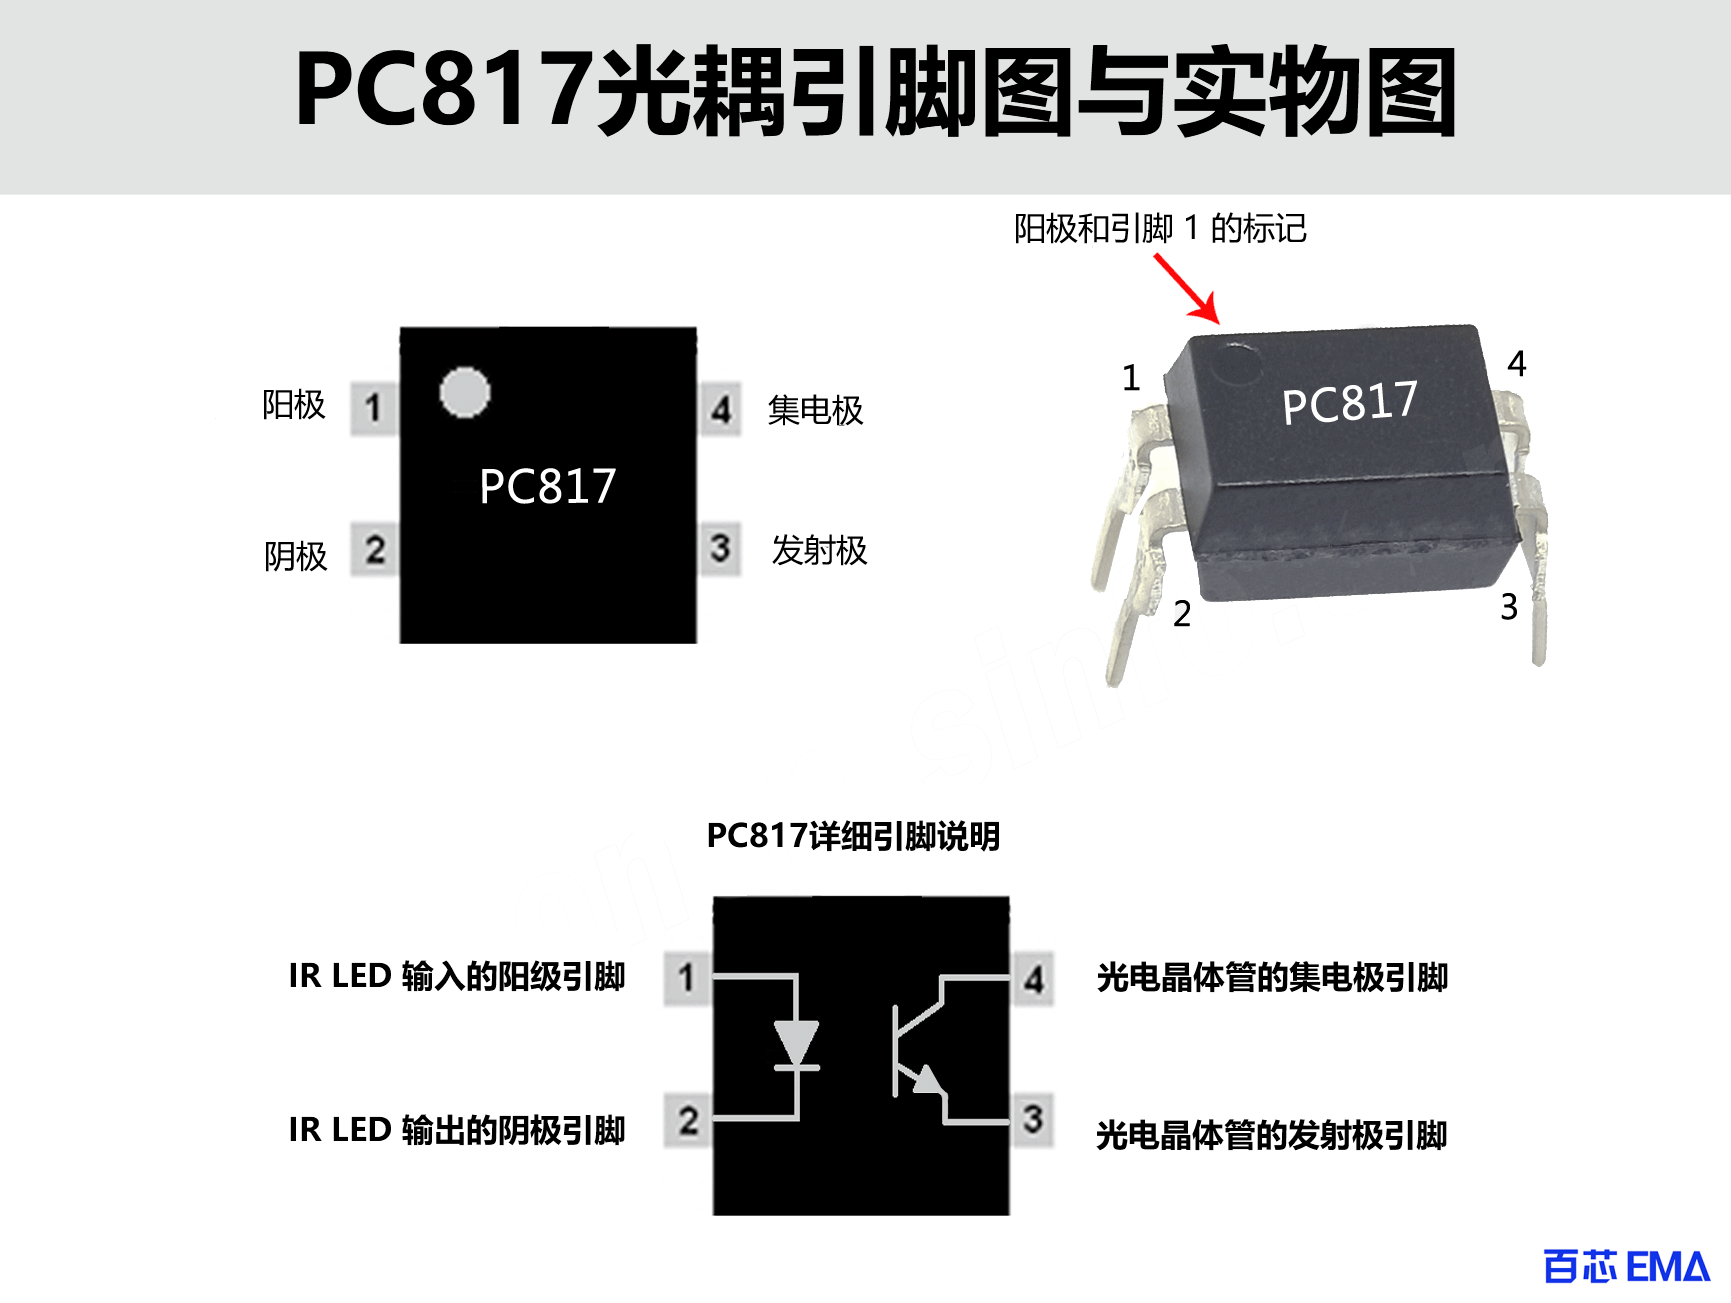 PC817 光耦引脚图与实物图